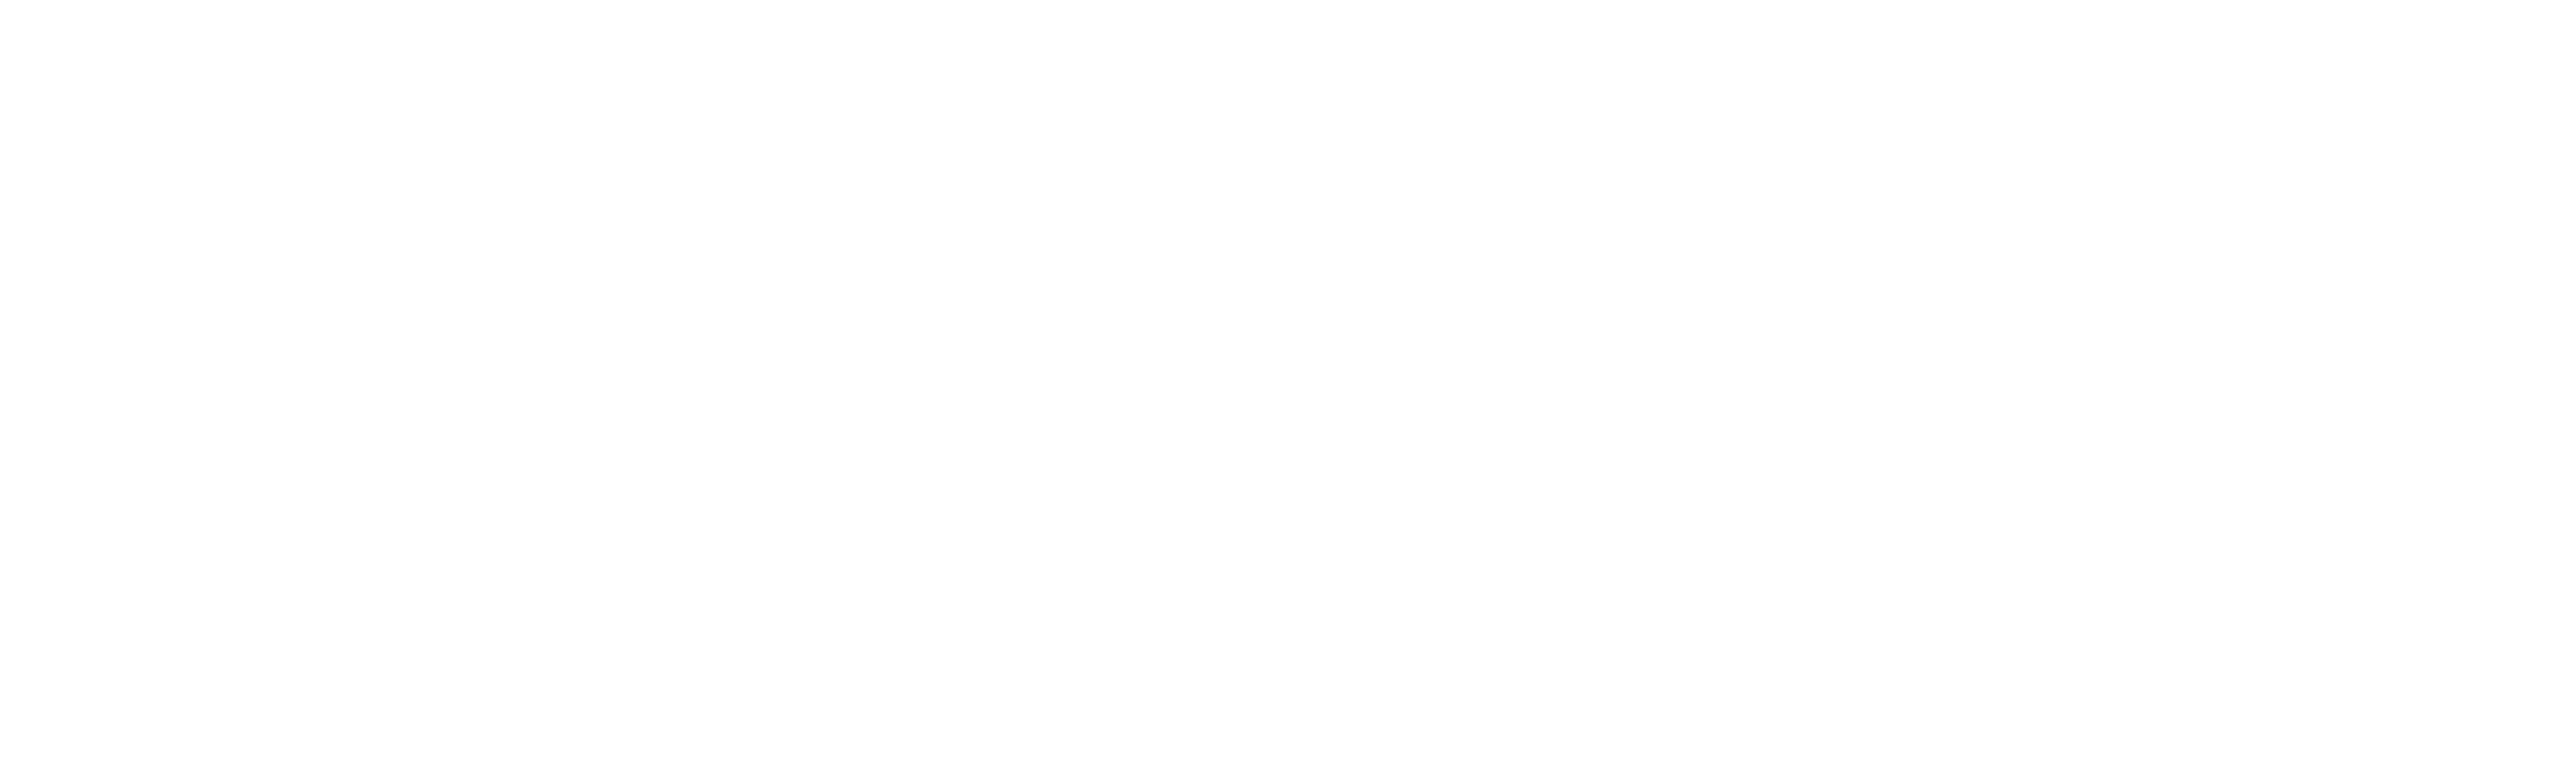 San Diego Zoo & Gardens